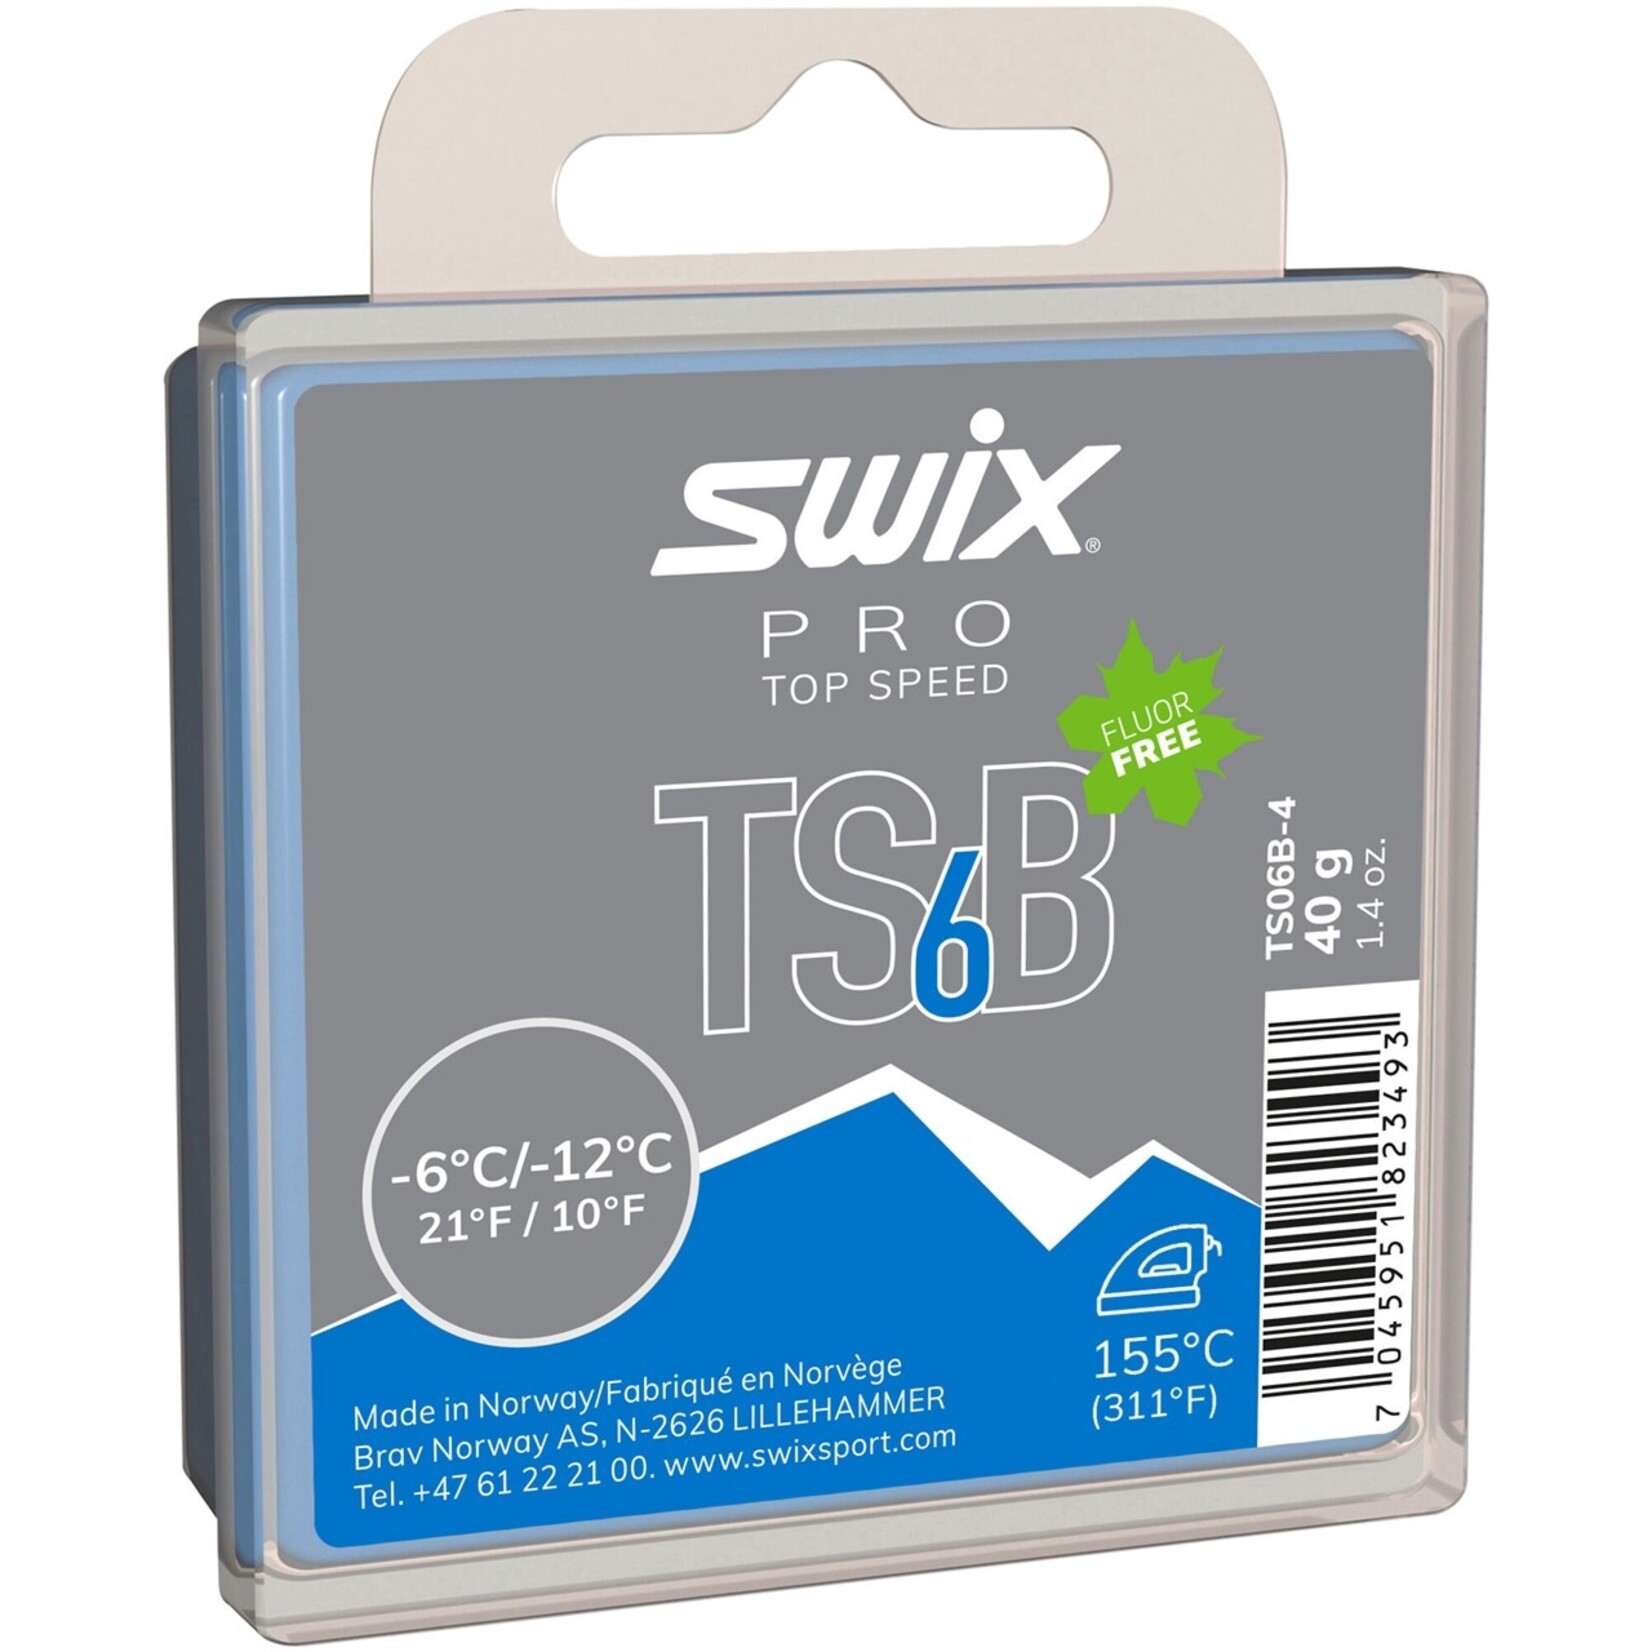 Swix TSB Wax 40g